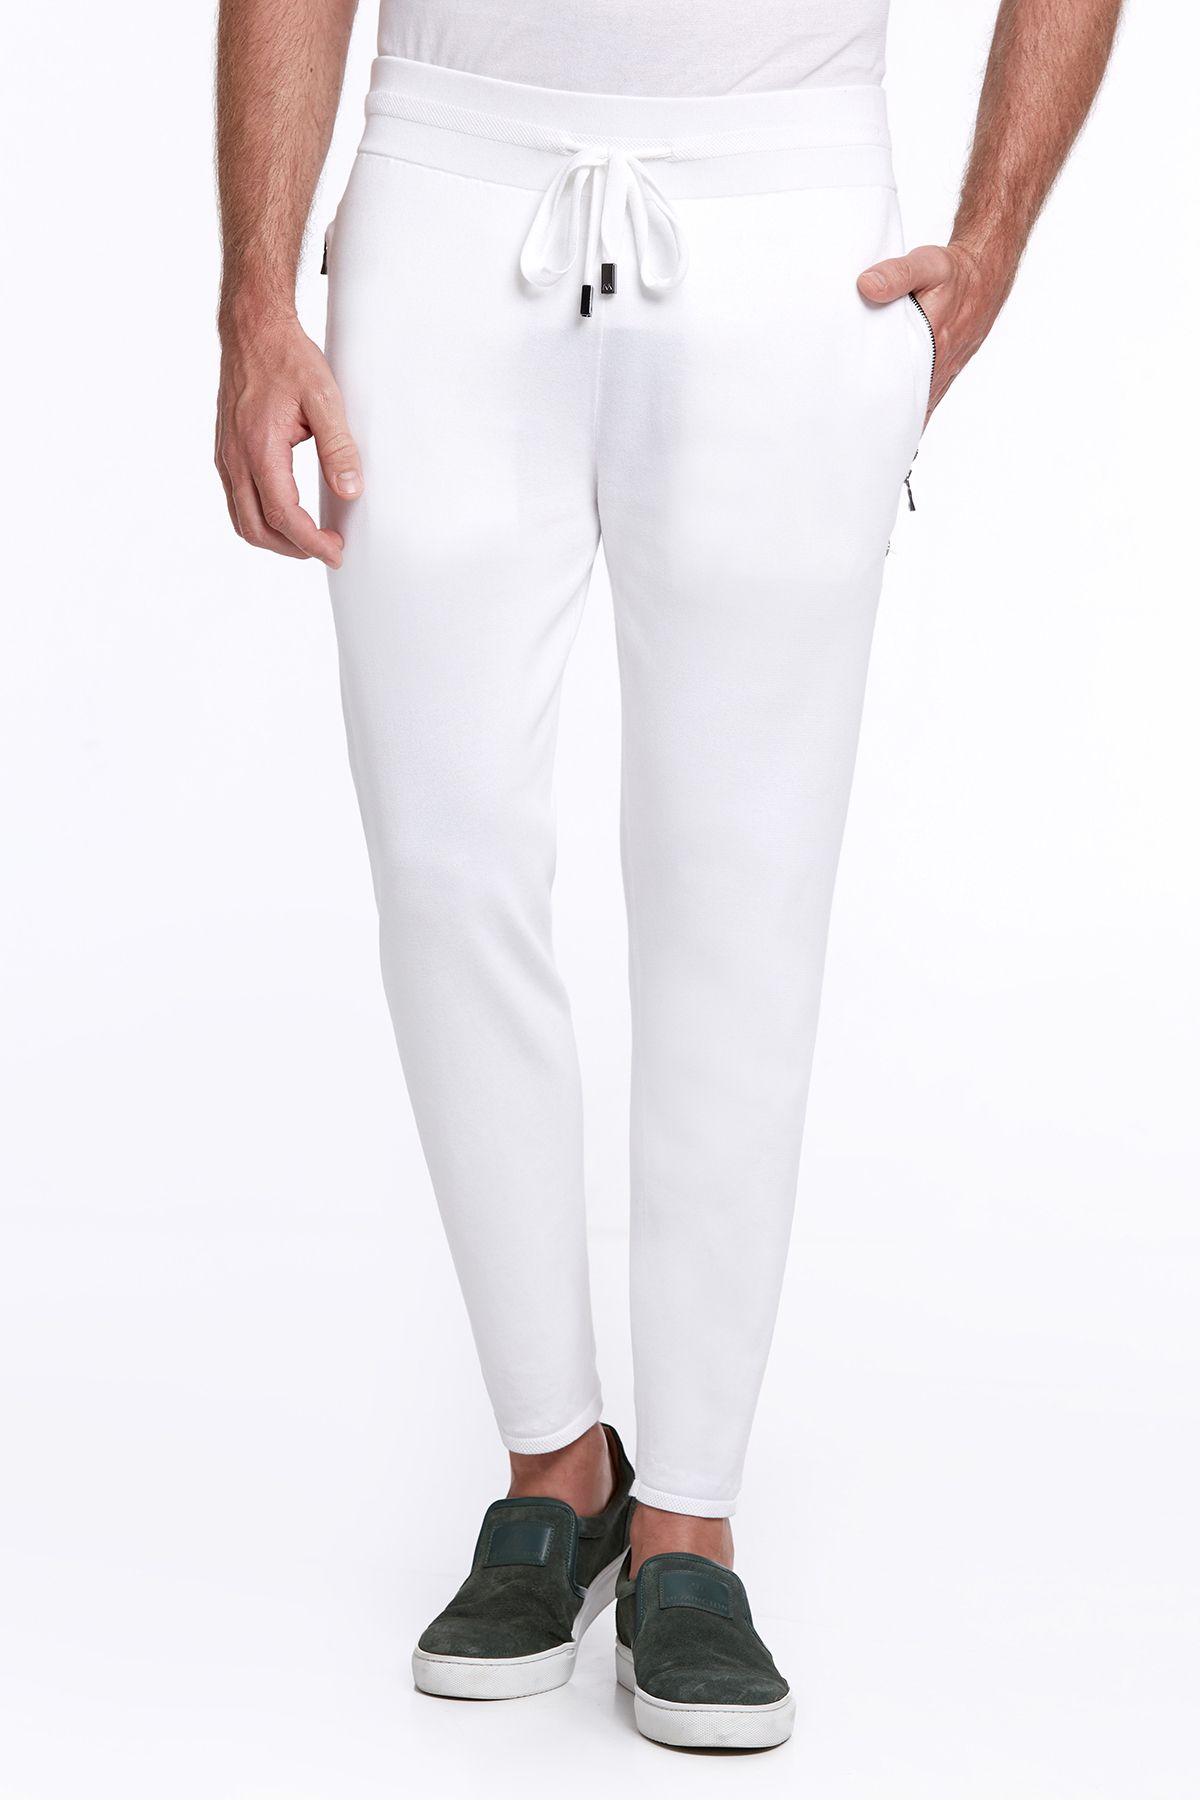 Hemington Nakış Logolu Bağcıklı Kırık Beyaz Triko Pantolon